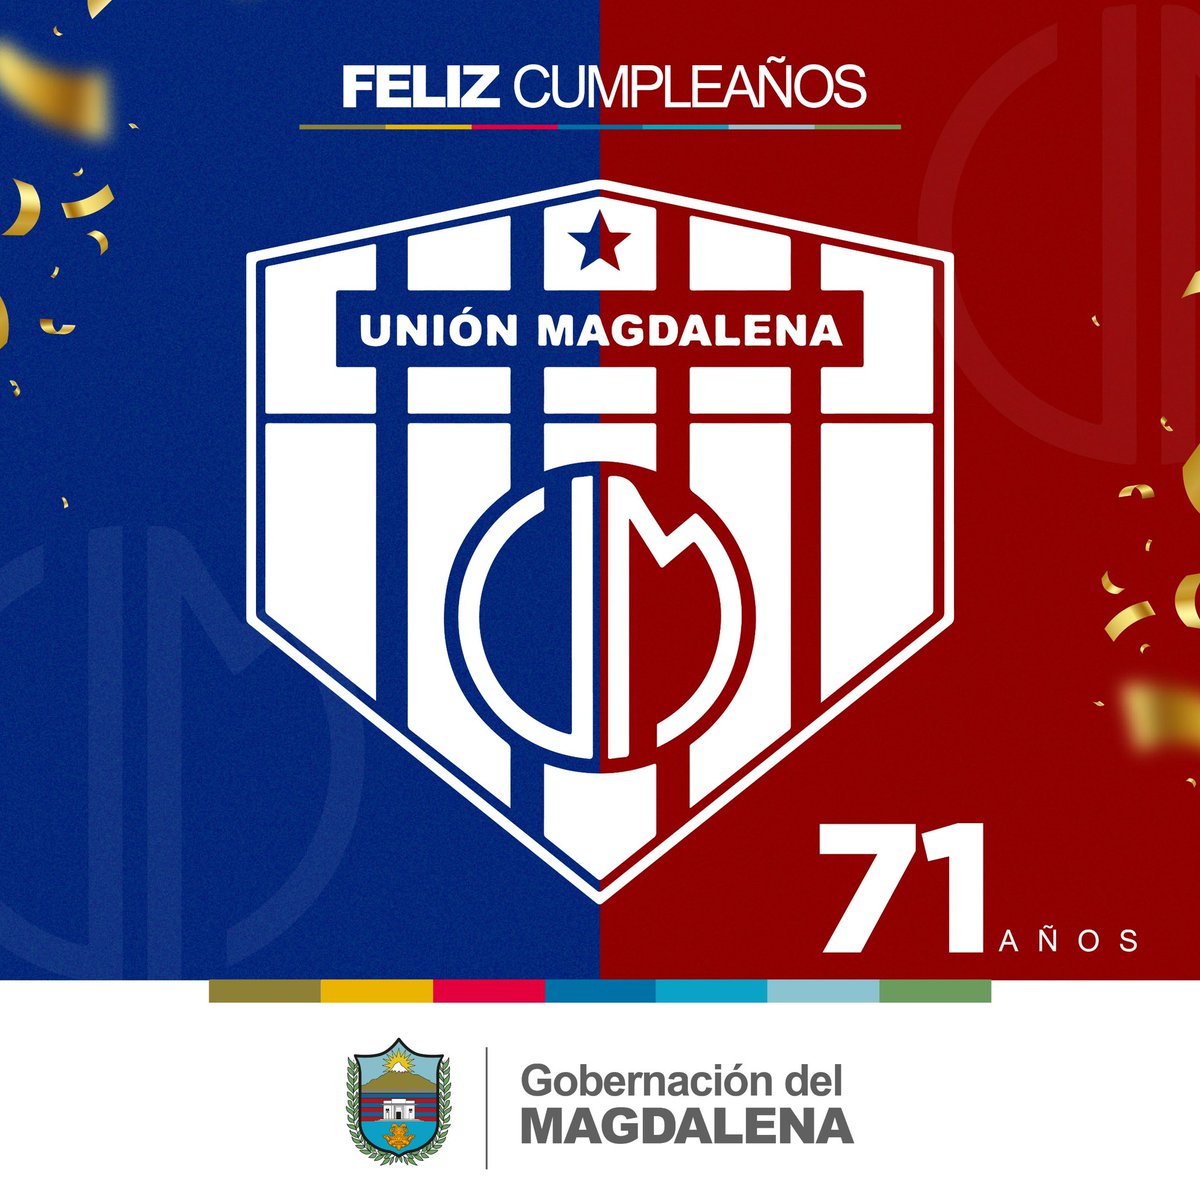 Felices 71 años de historia al equipo del orgullo magdalenense, el ciclón bananero, el de la hinchada fiel. ¡Vamos por más triunfos! 💙♥️ #71AñosDeHistoria